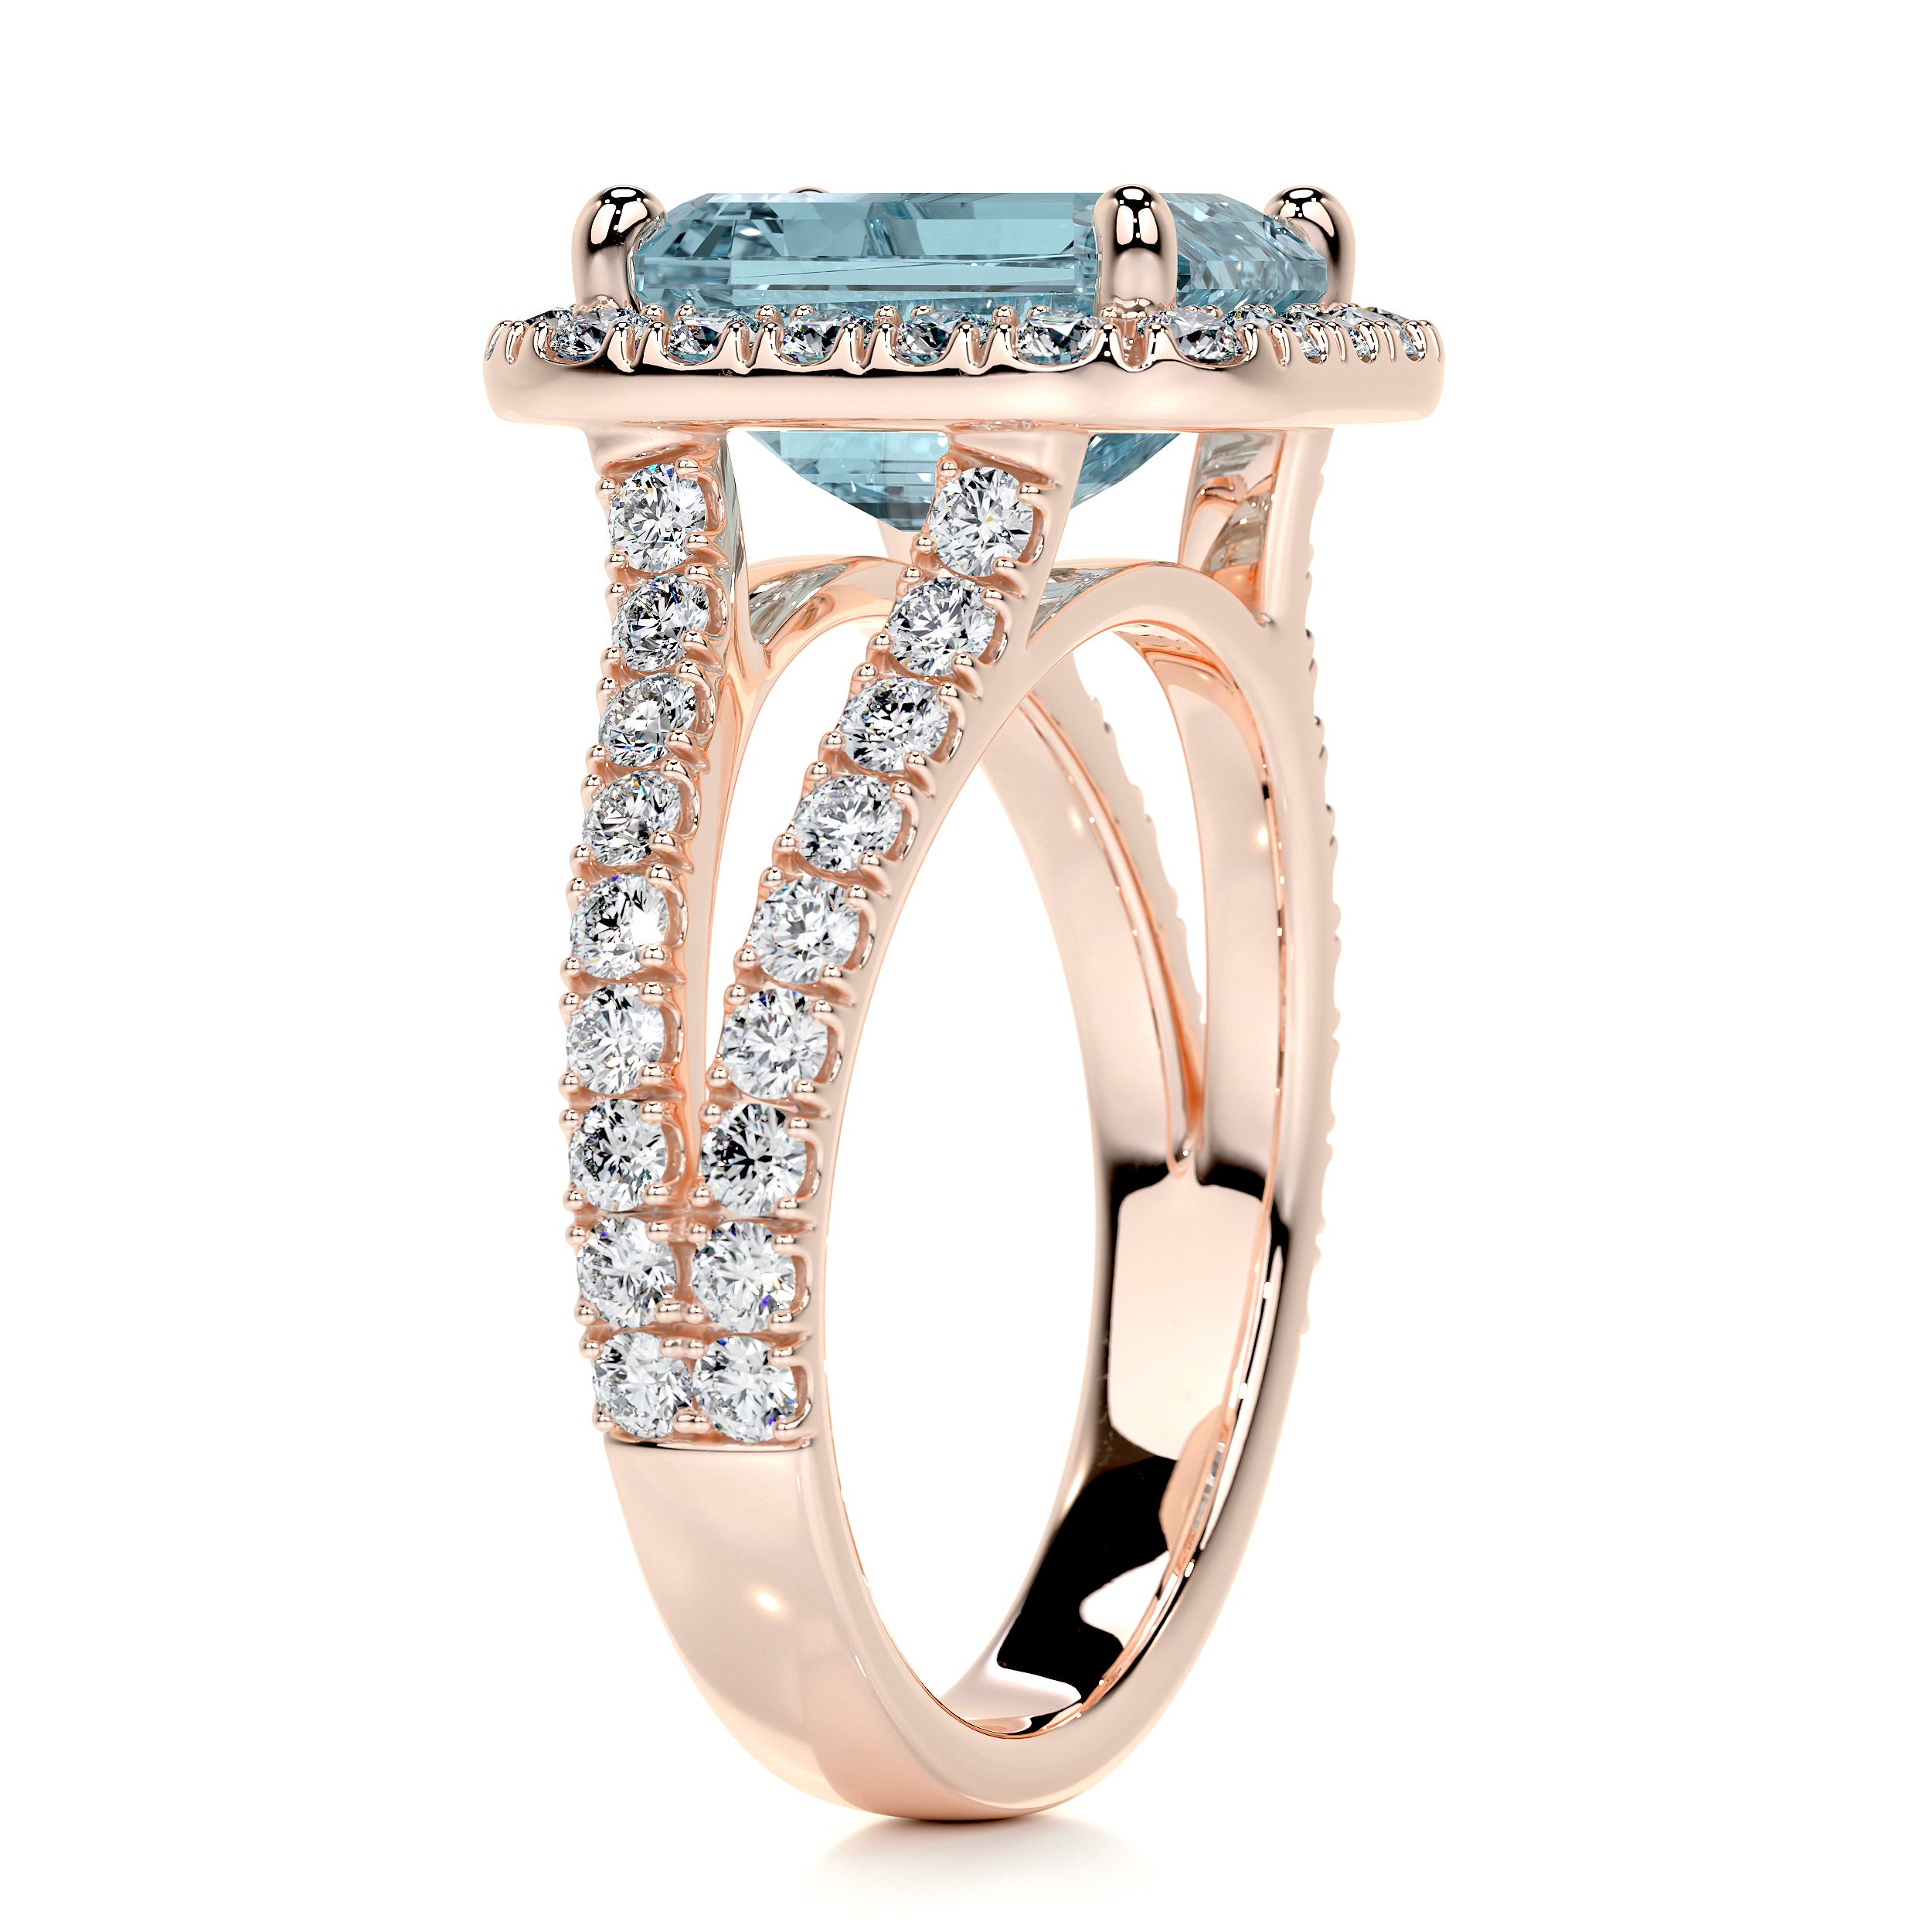 Melody Gemstone & Diamonds Ring   (5 Carat) - 14K Rose Gold